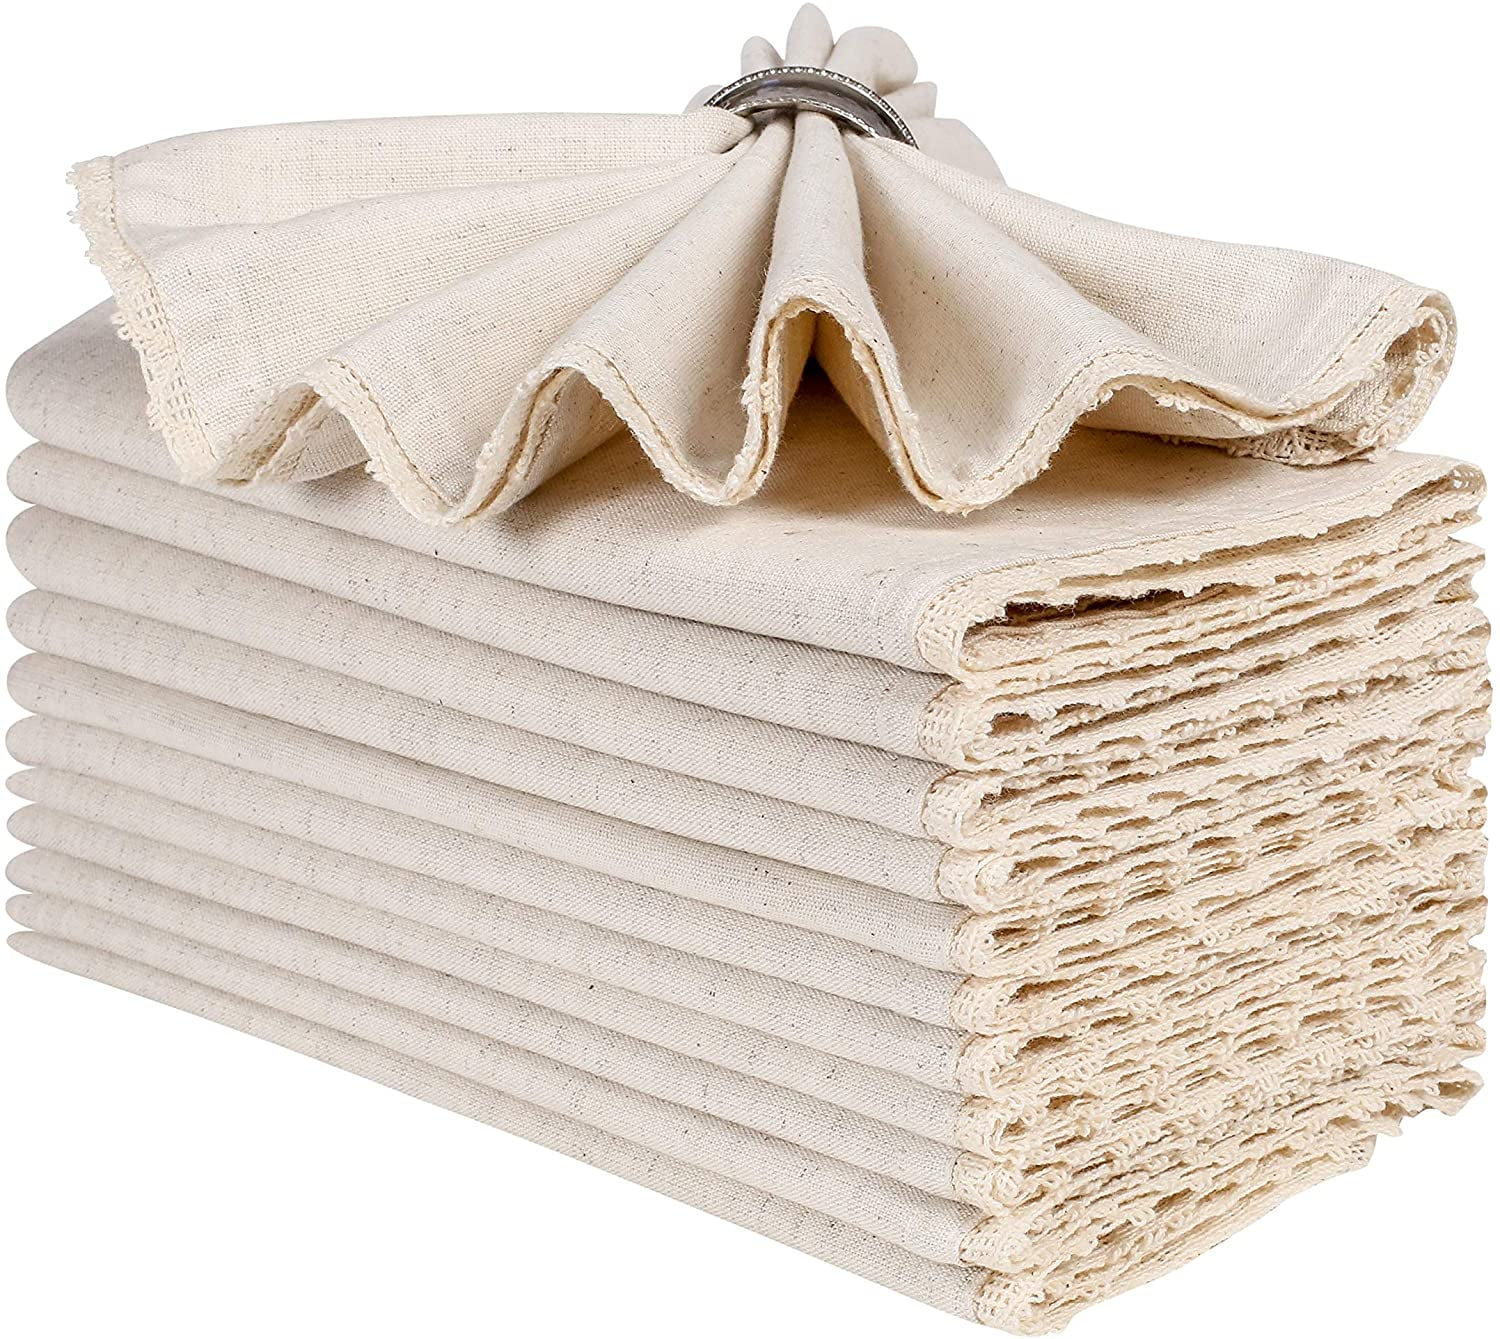 60 white restaurant wedding catering dinner cloth linen napkins 20x20 